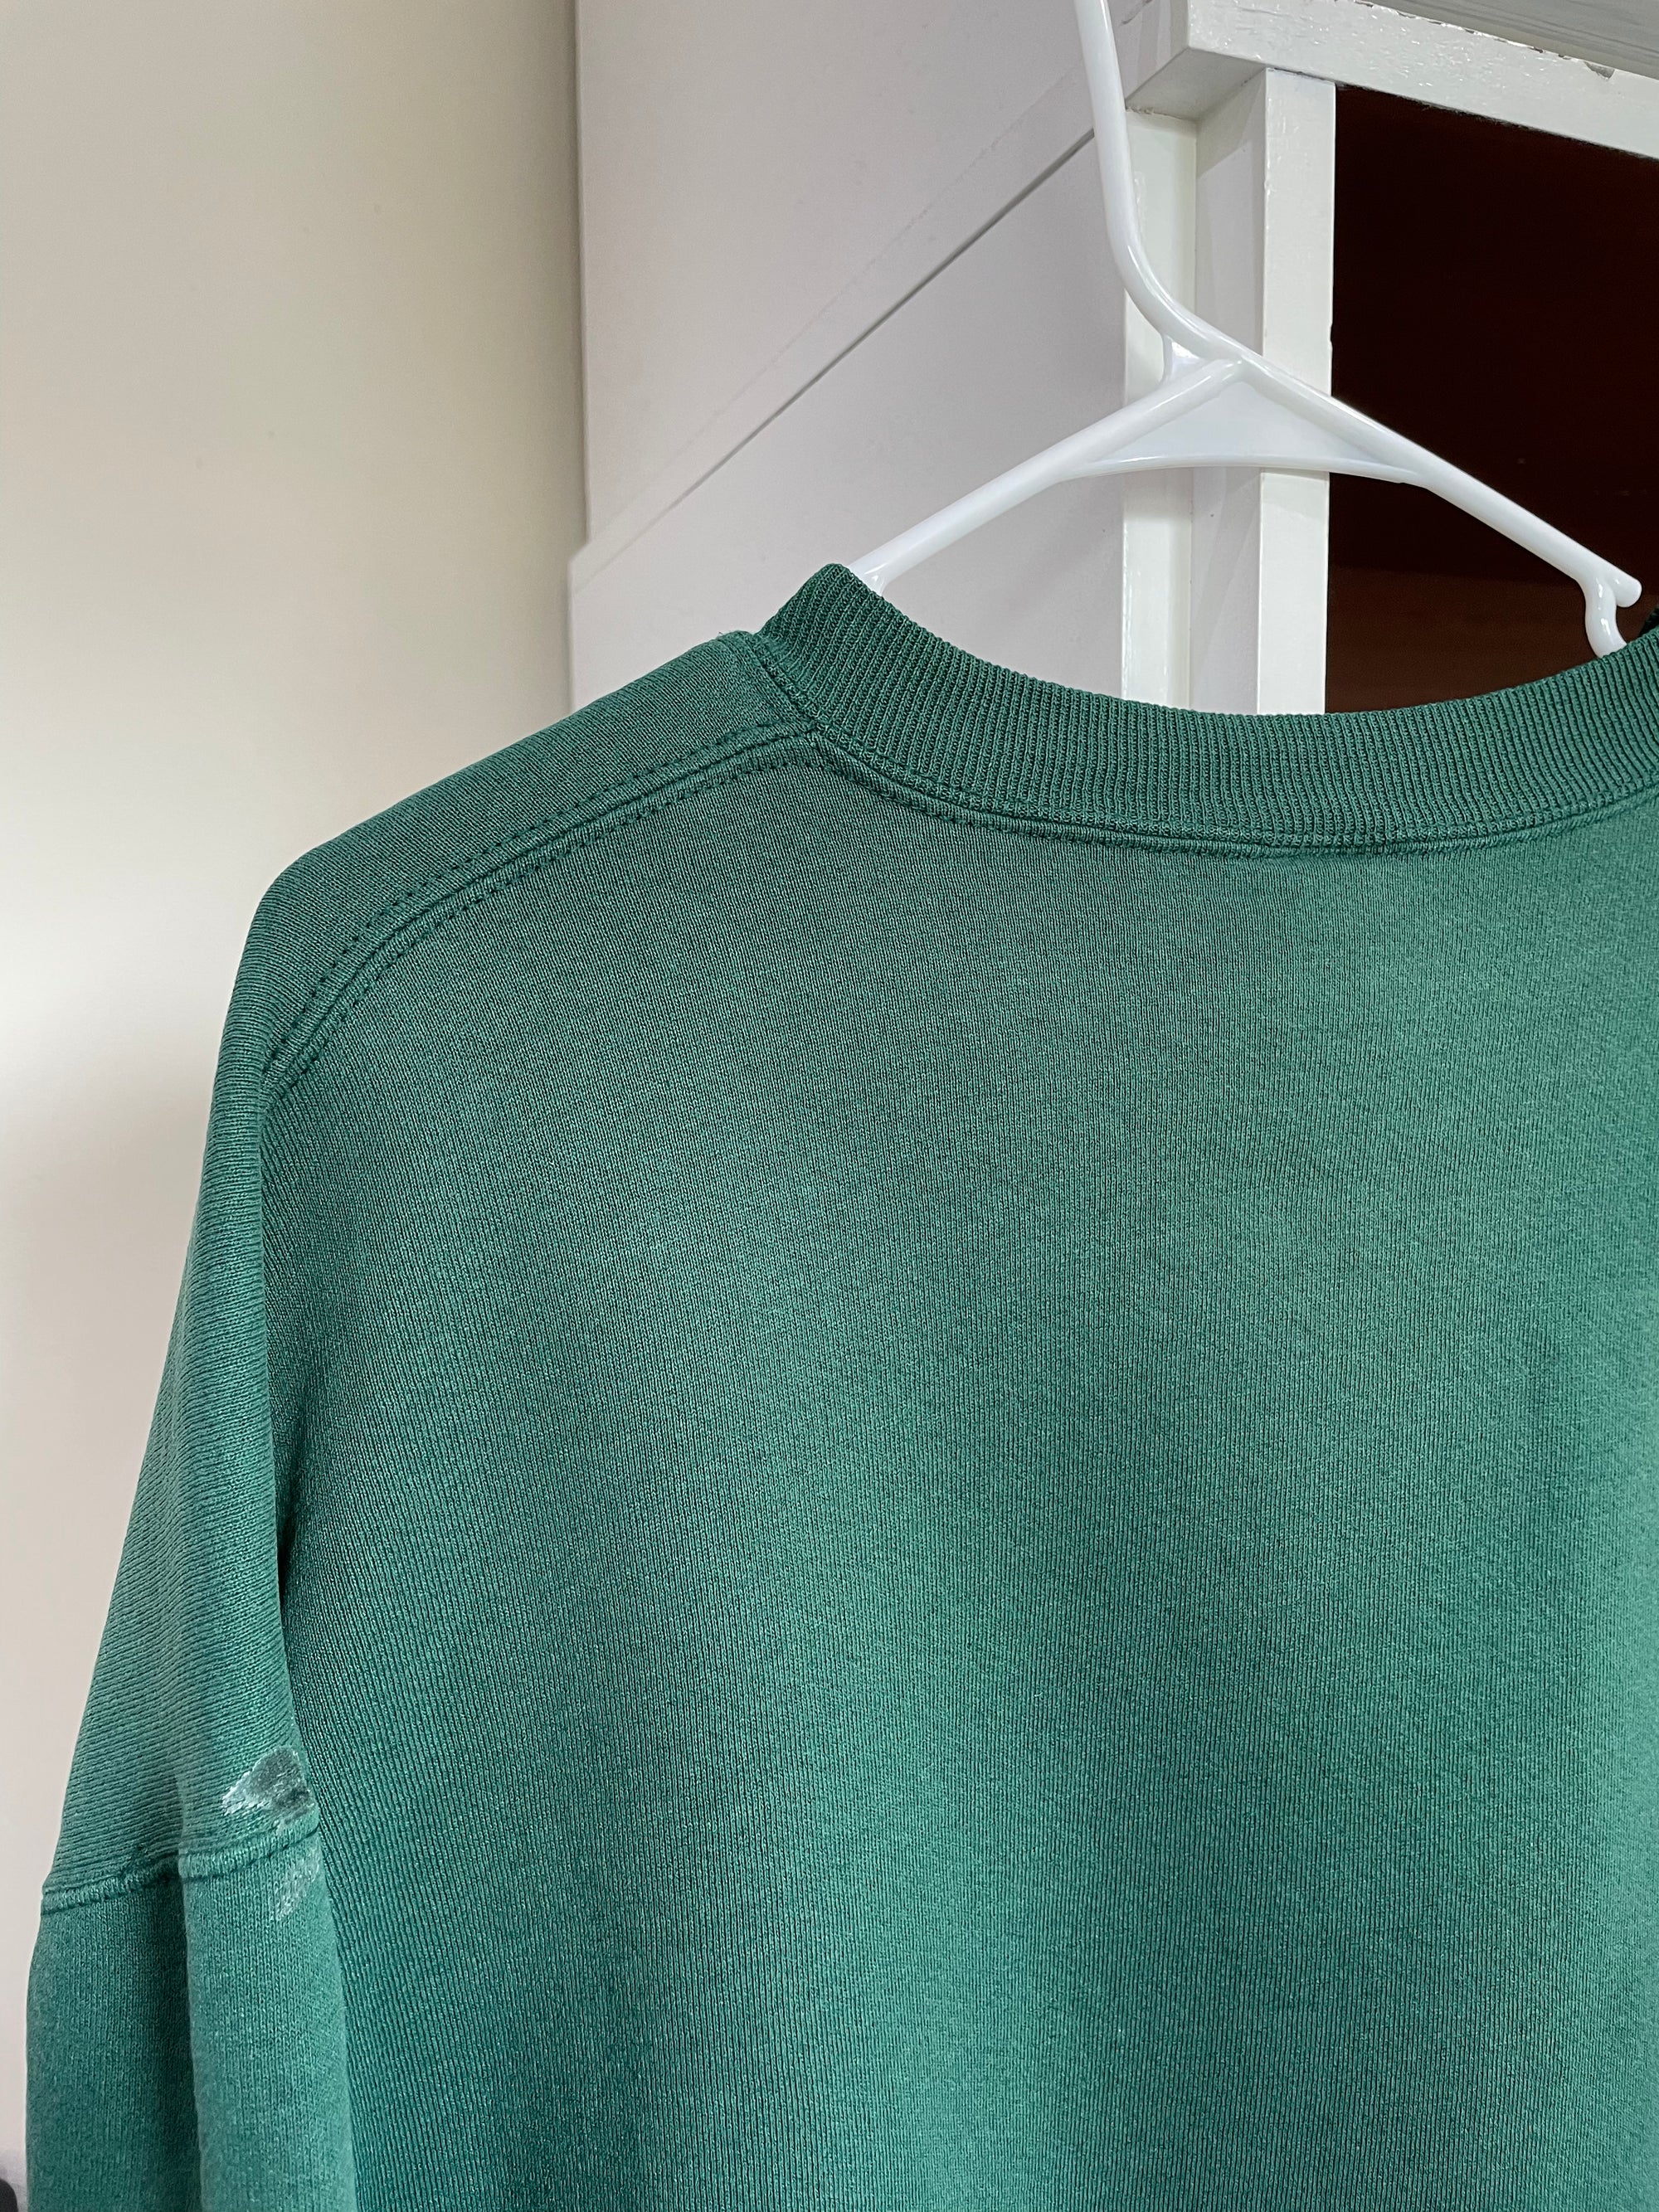 1990s Russell Faded Green Blank Sweatshirt (XL)